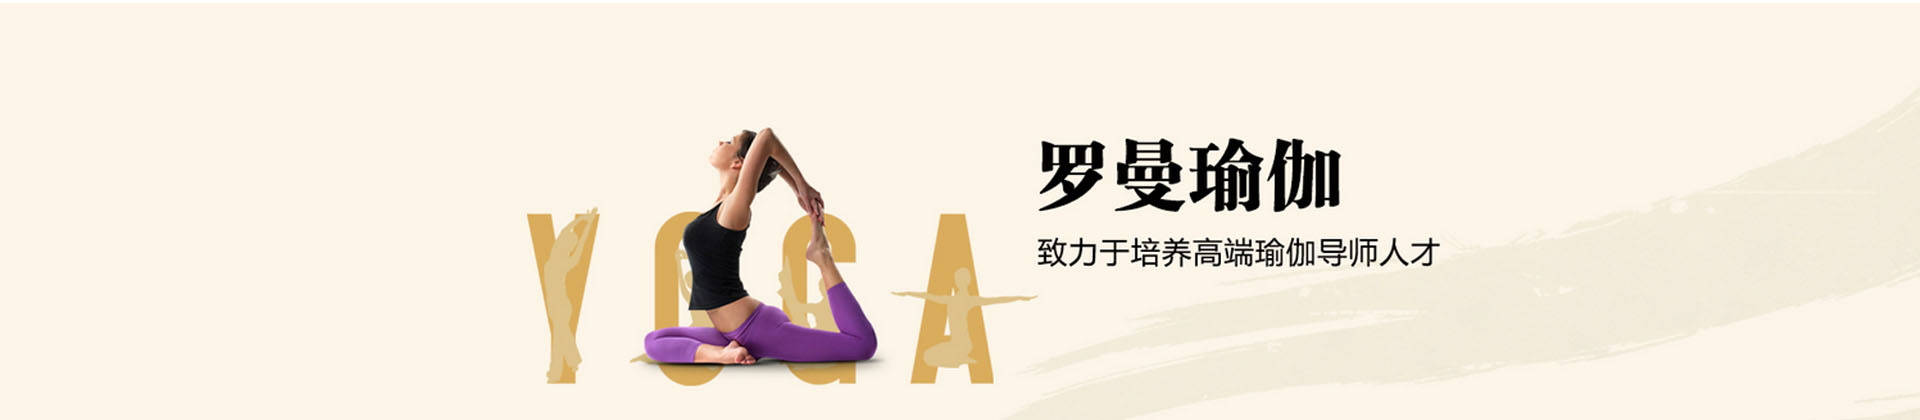 广州罗曼国际瑜伽